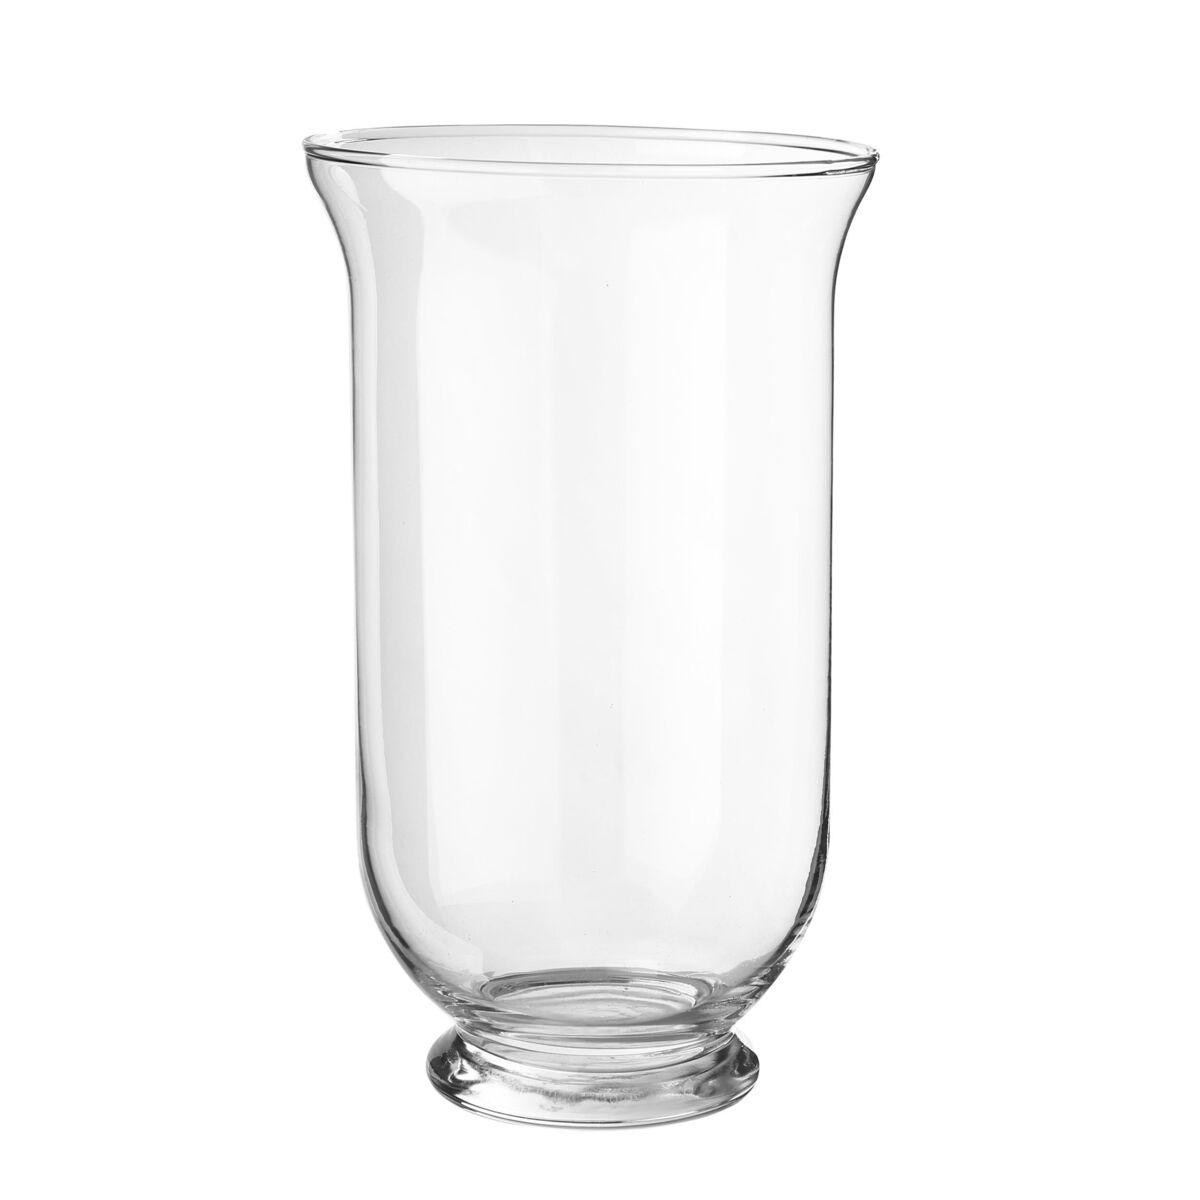 Lampion/Wazon szklany wys. 25 cm transparentny